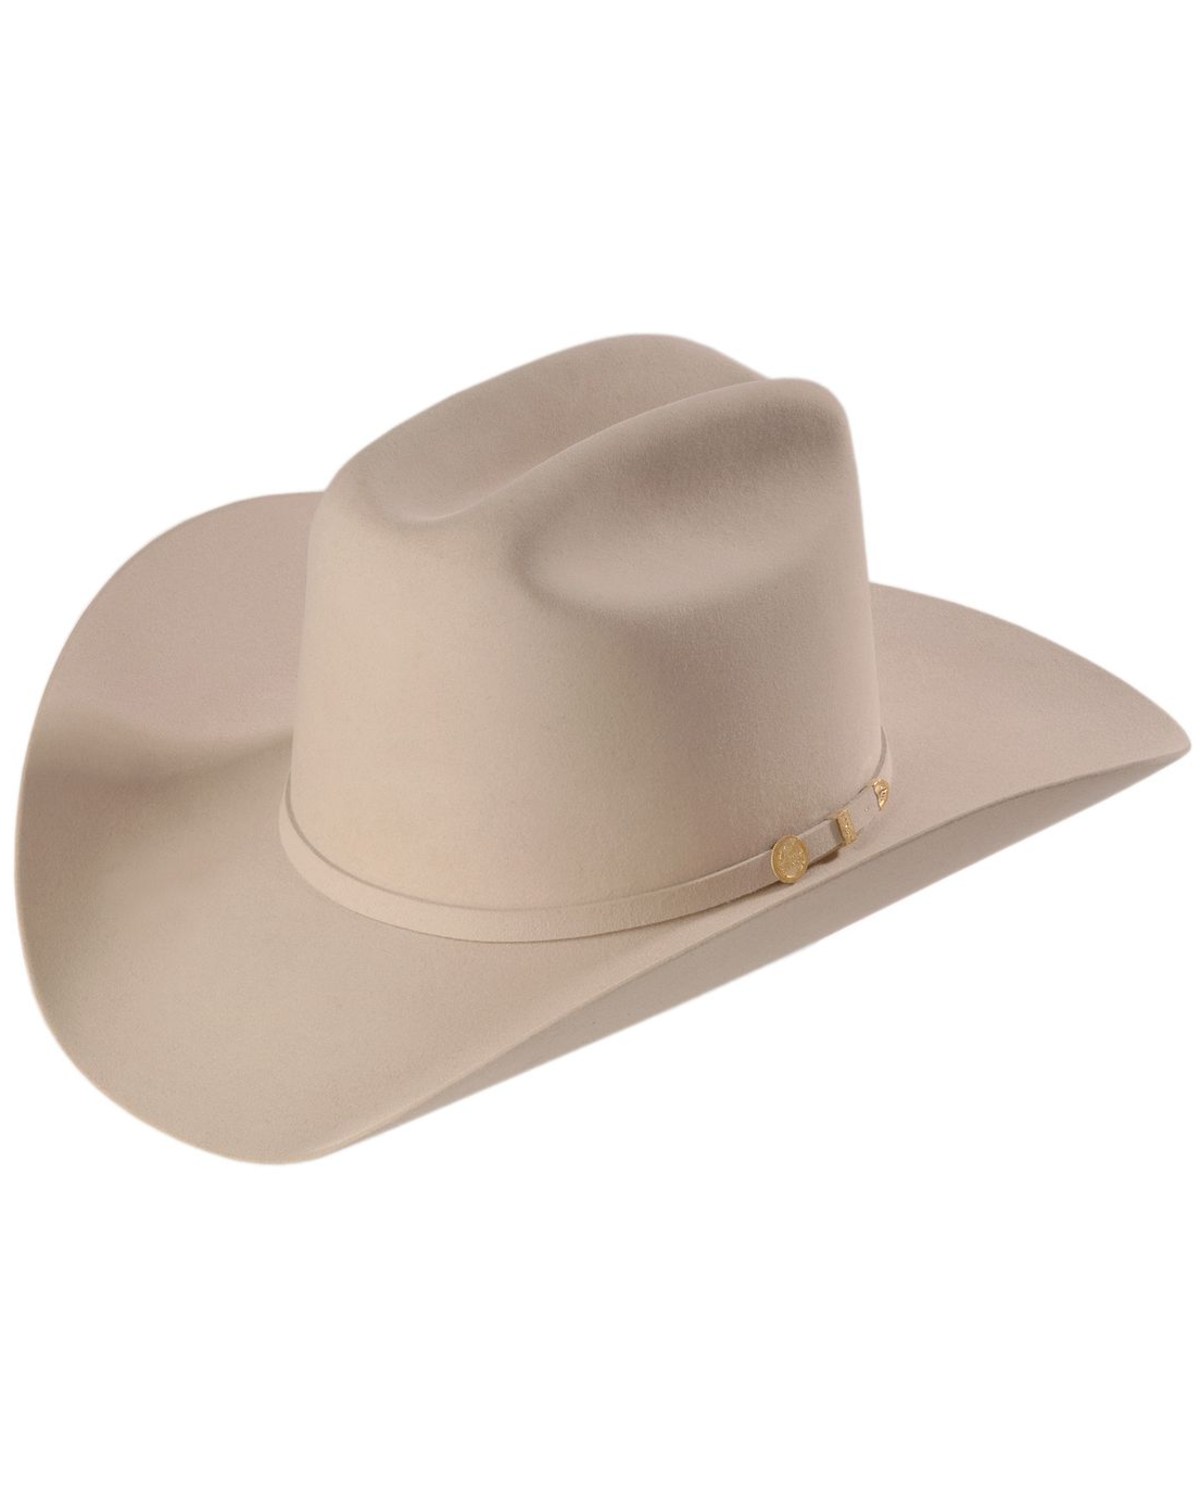 Stetson El Presidente 100X Felt Cowboy Hat